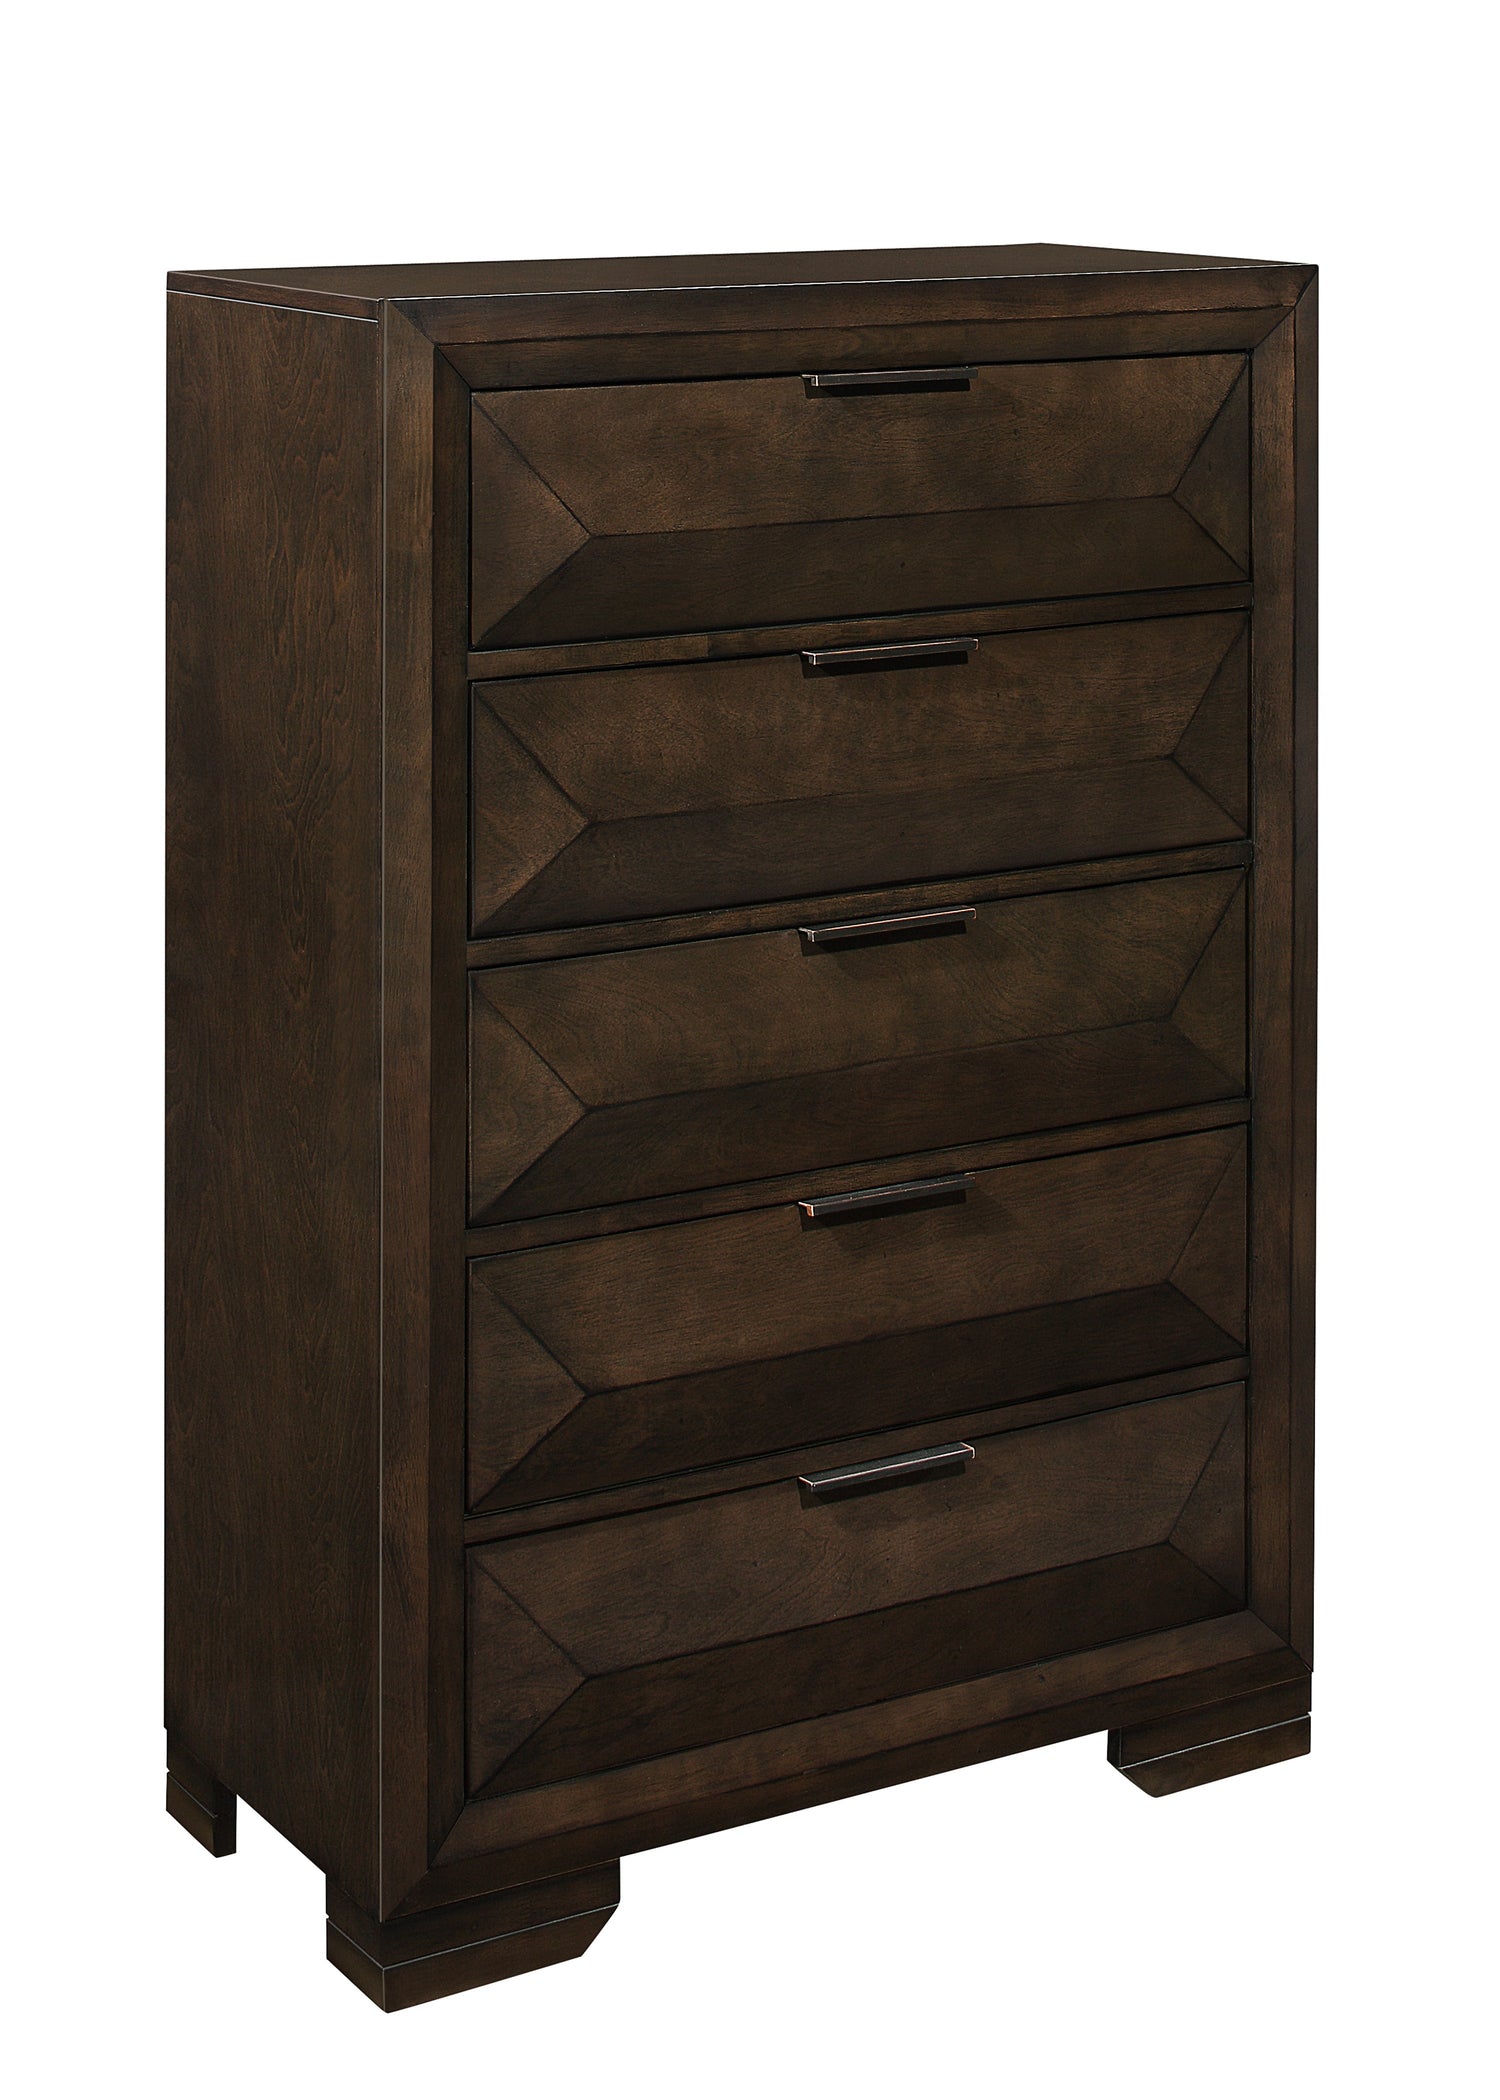 Chesky Bookcase Storage Platform Bedroom Set - SET | 1753K-1 | 1753K-DW | 1753-3 | 1753-4 | 1753-5 | 1753-6 - Bien Home Furniture &amp; Electronics